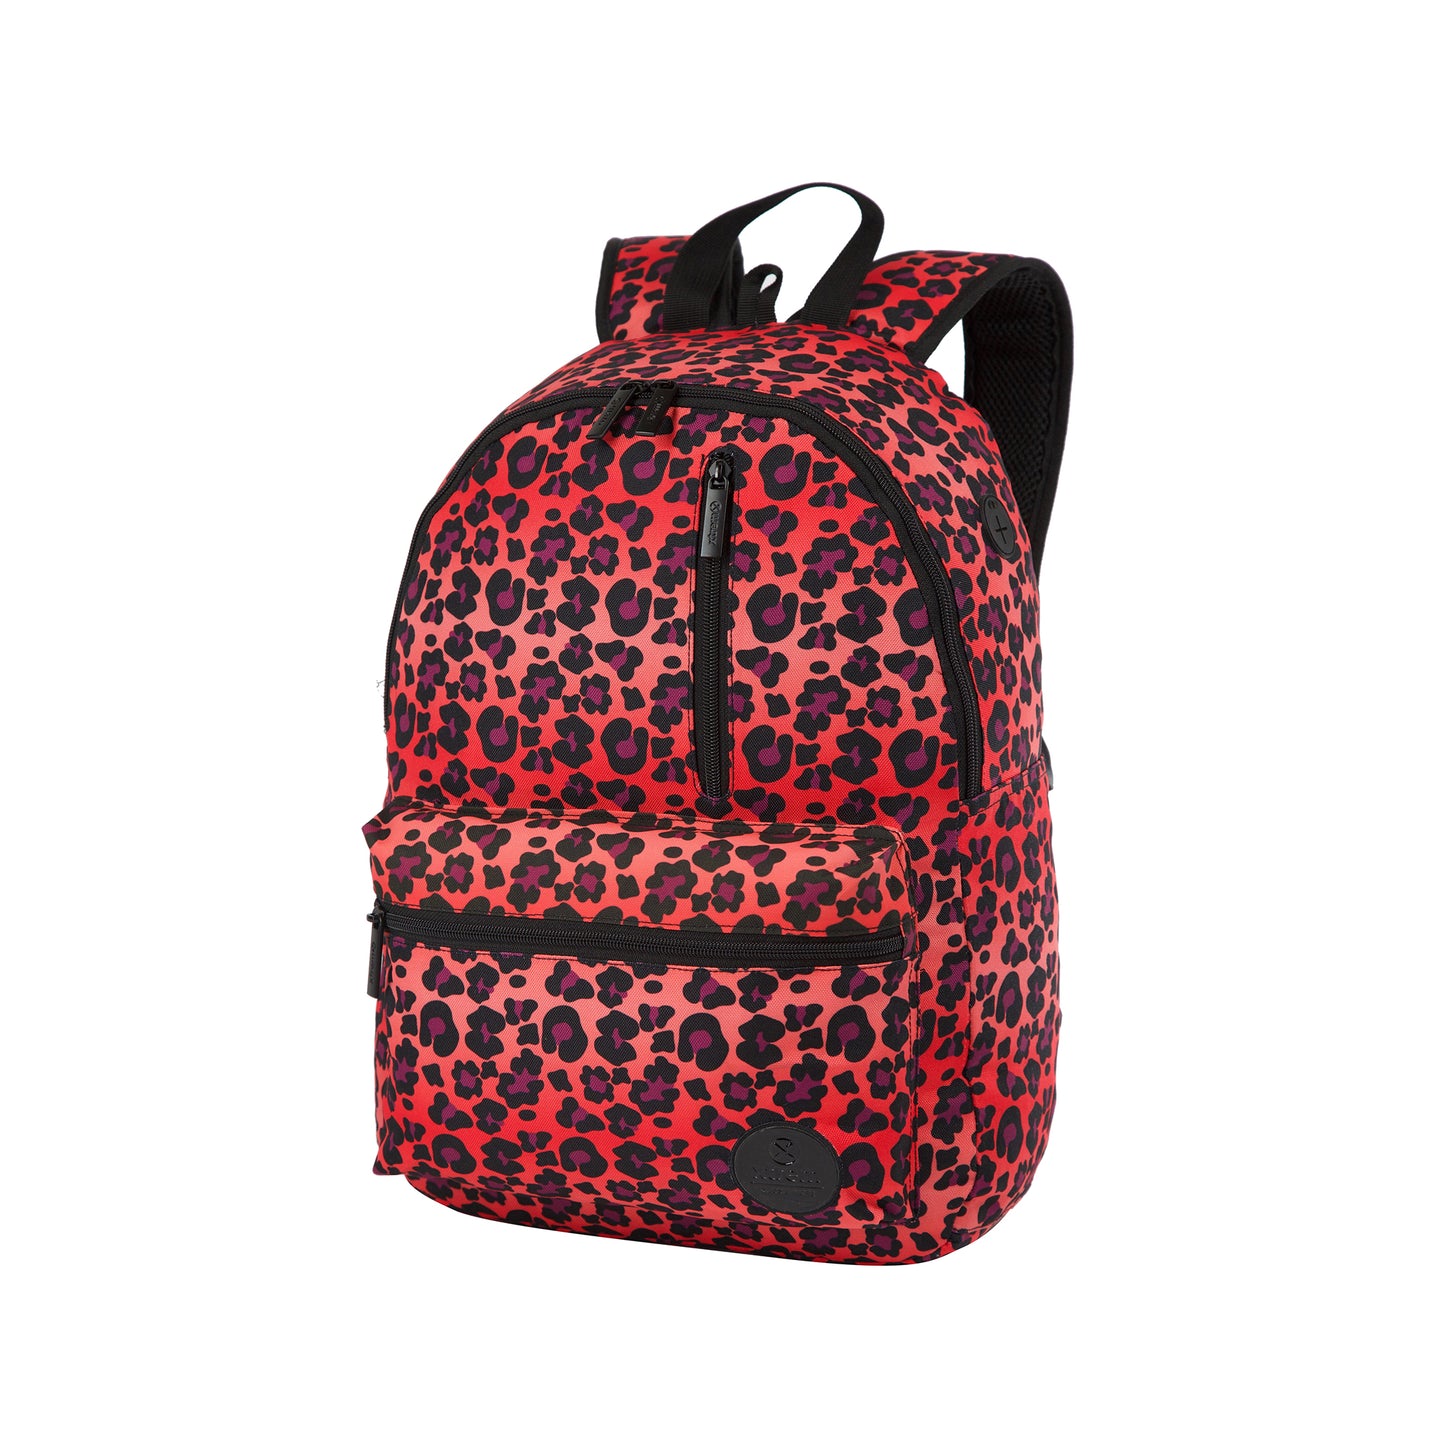  Mochila ENERGY 000 Backpack Warm Leopard 